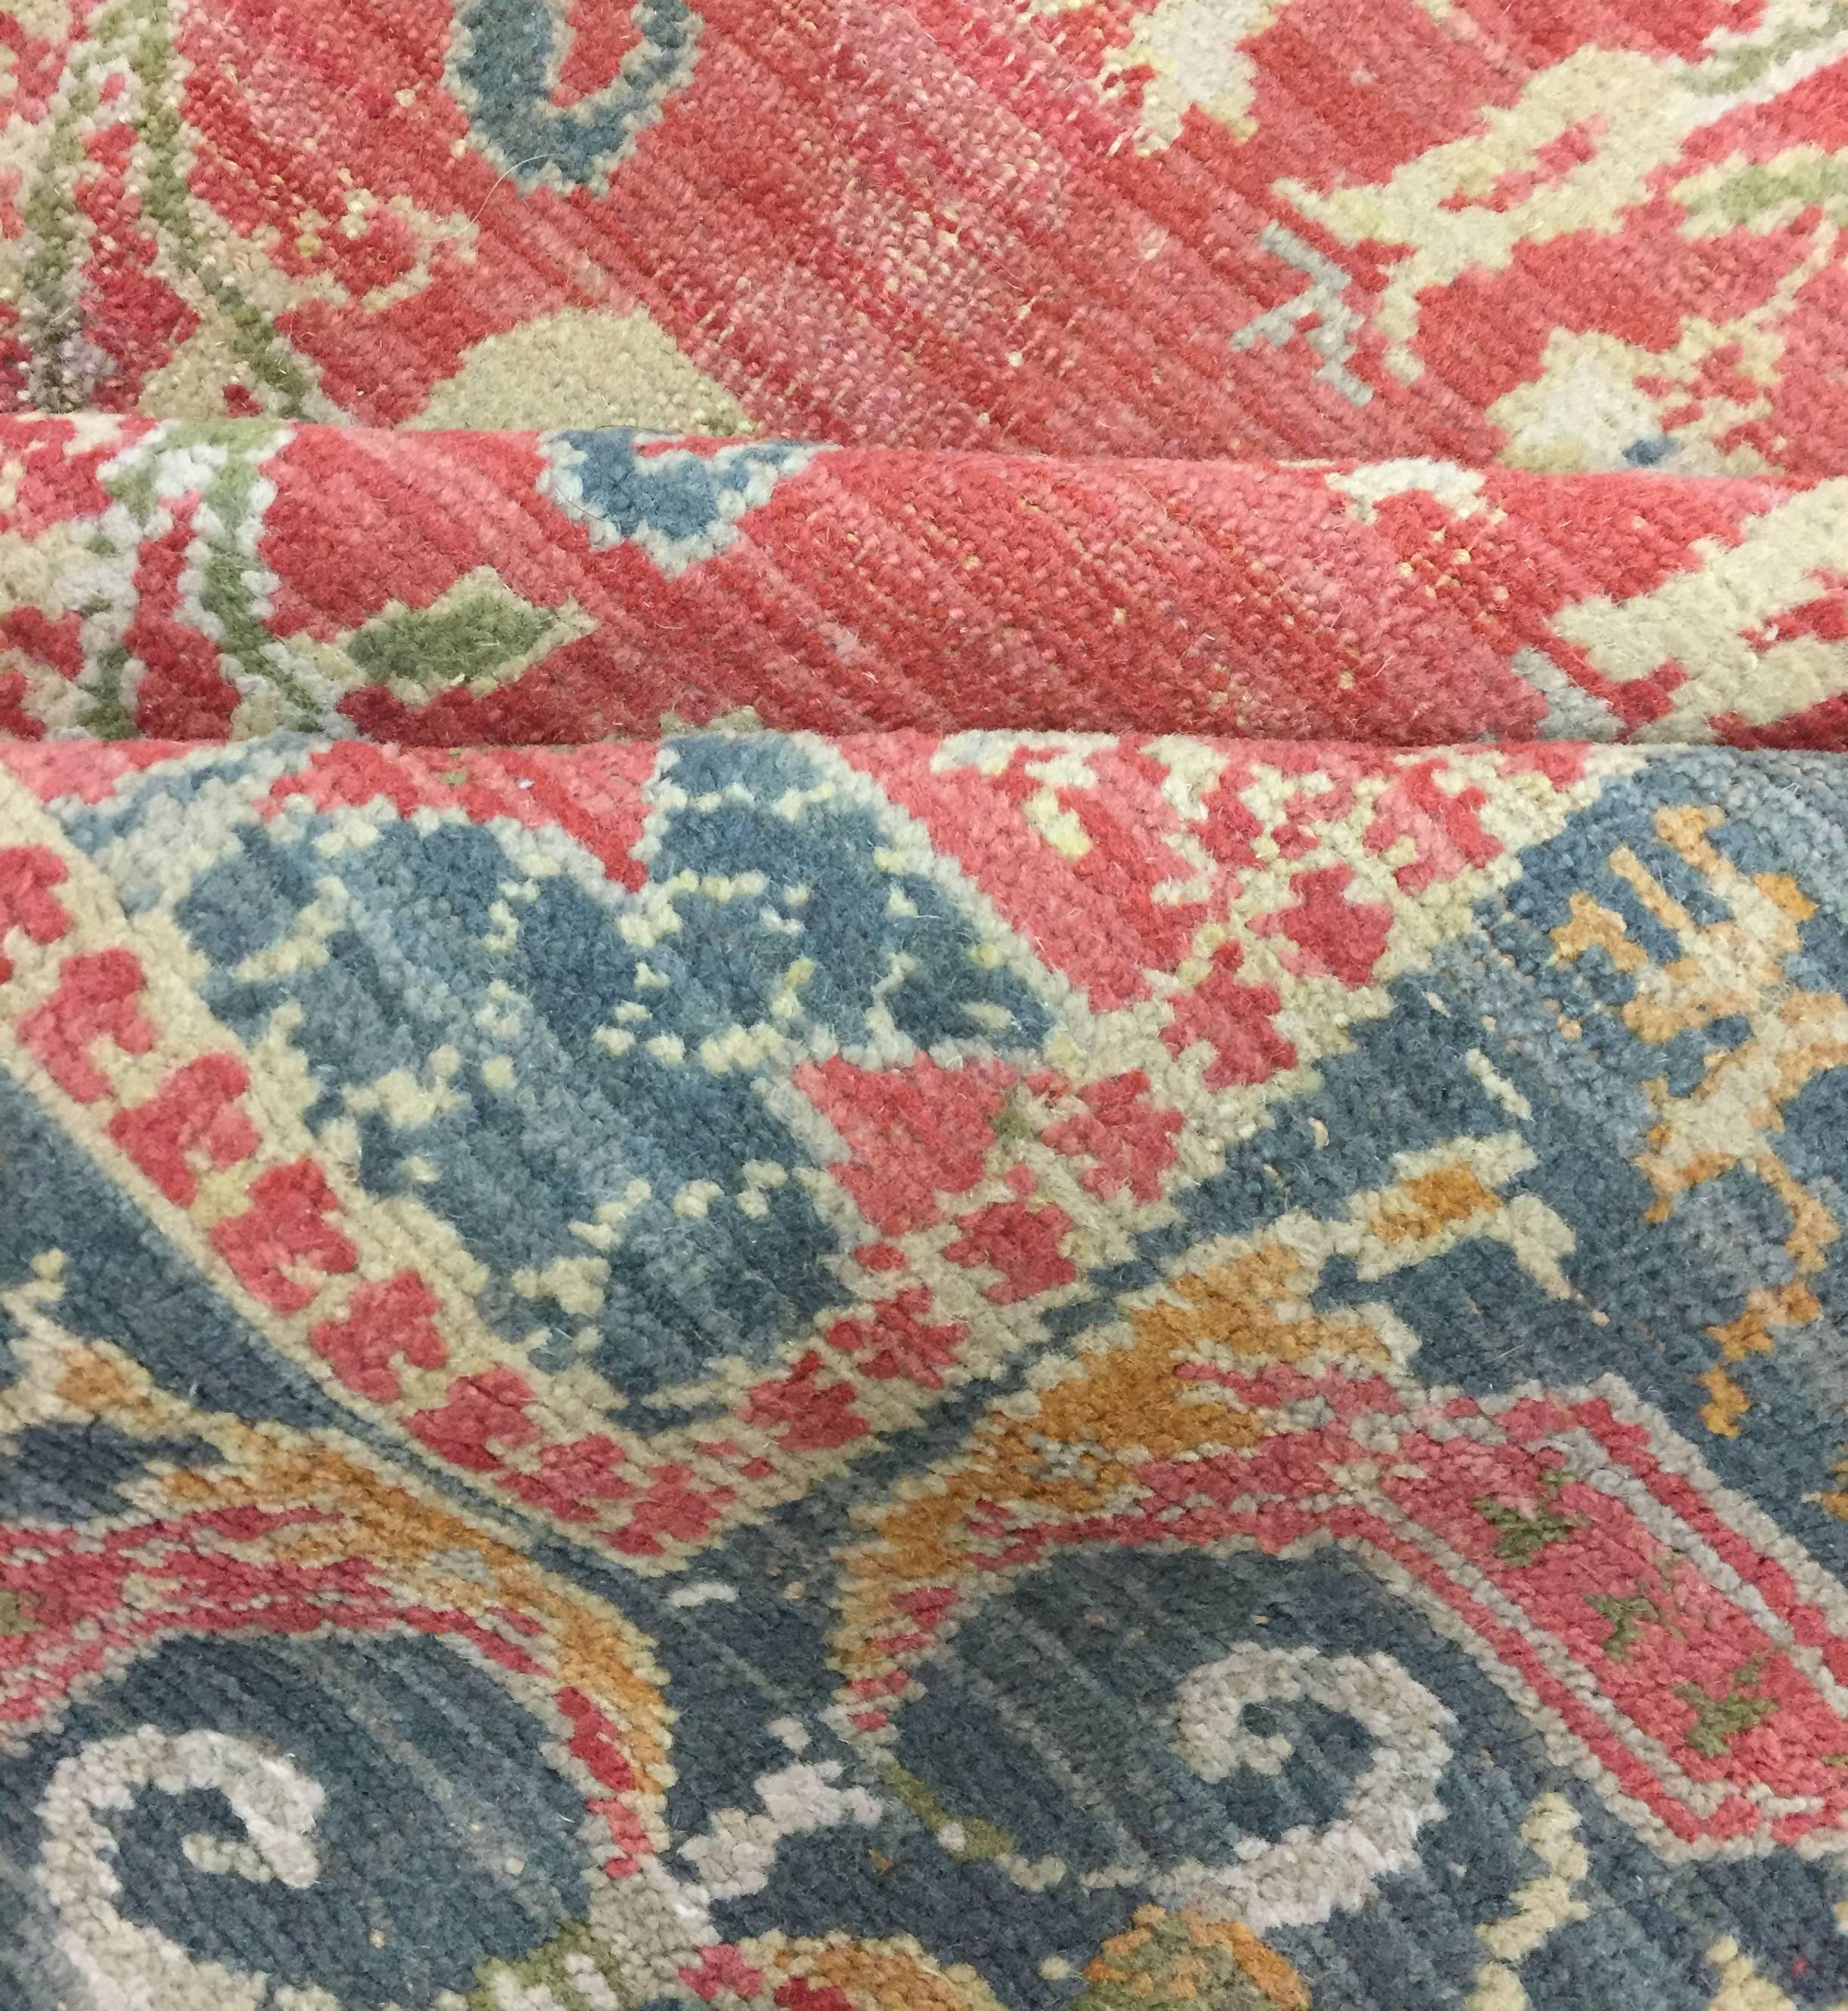 Tapis espagnol vintage, circa 1940 5'x 7'4. On ne pense pas à l'Espagne et aux tapis, pourtant le tissage fait partie de la culture espagnole depuis des centaines d'années, à l'époque où l'Espagne faisait partie du monde islamique. Ce tapis